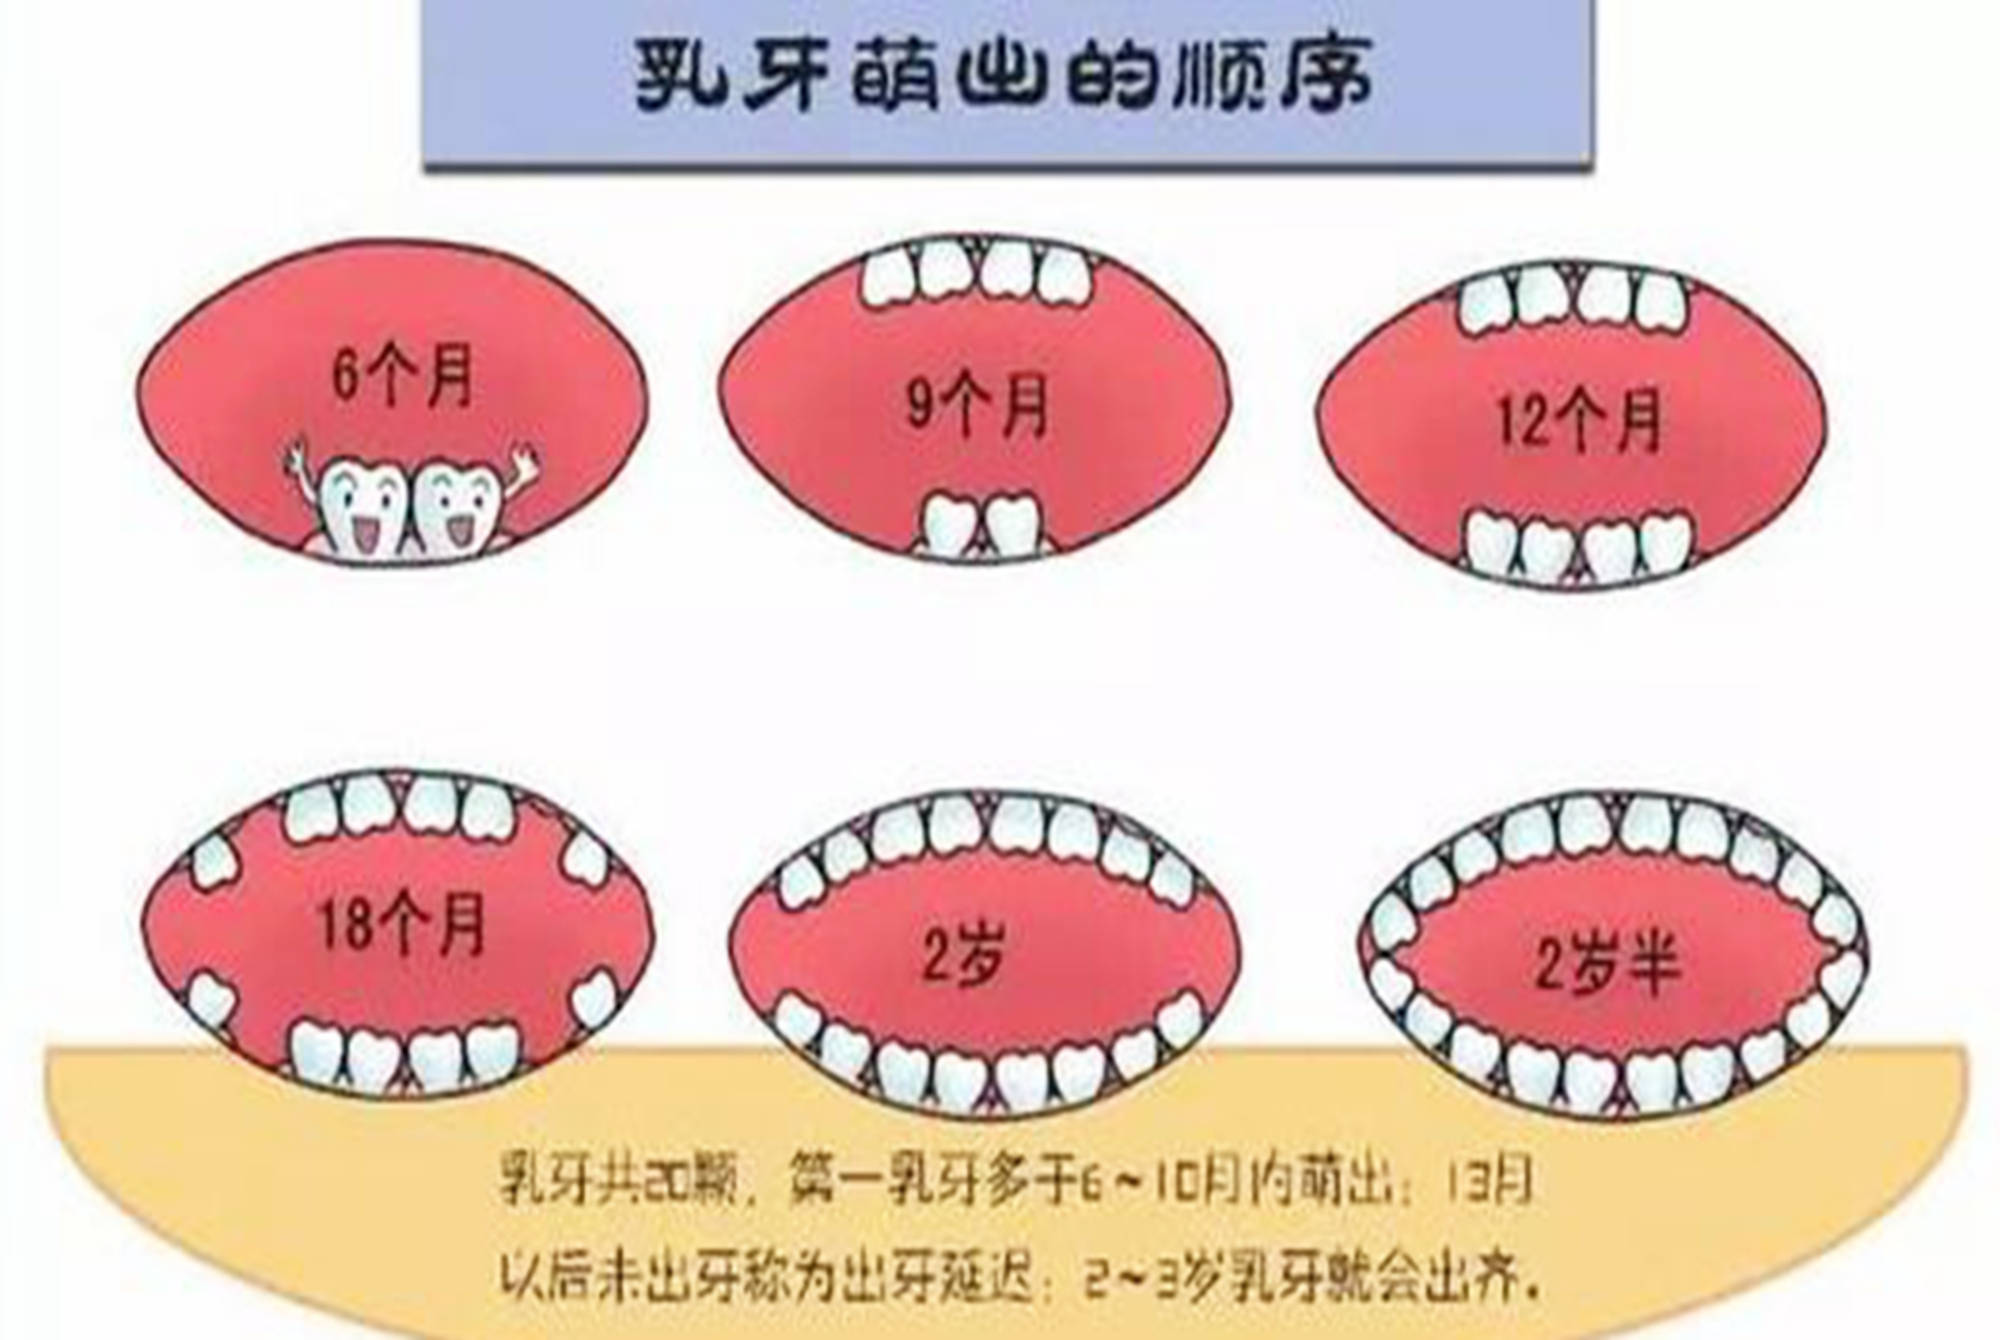 原创宝宝出牙早晚有啥差异?读懂这些出牙征兆,才能顺利迈过出牙期